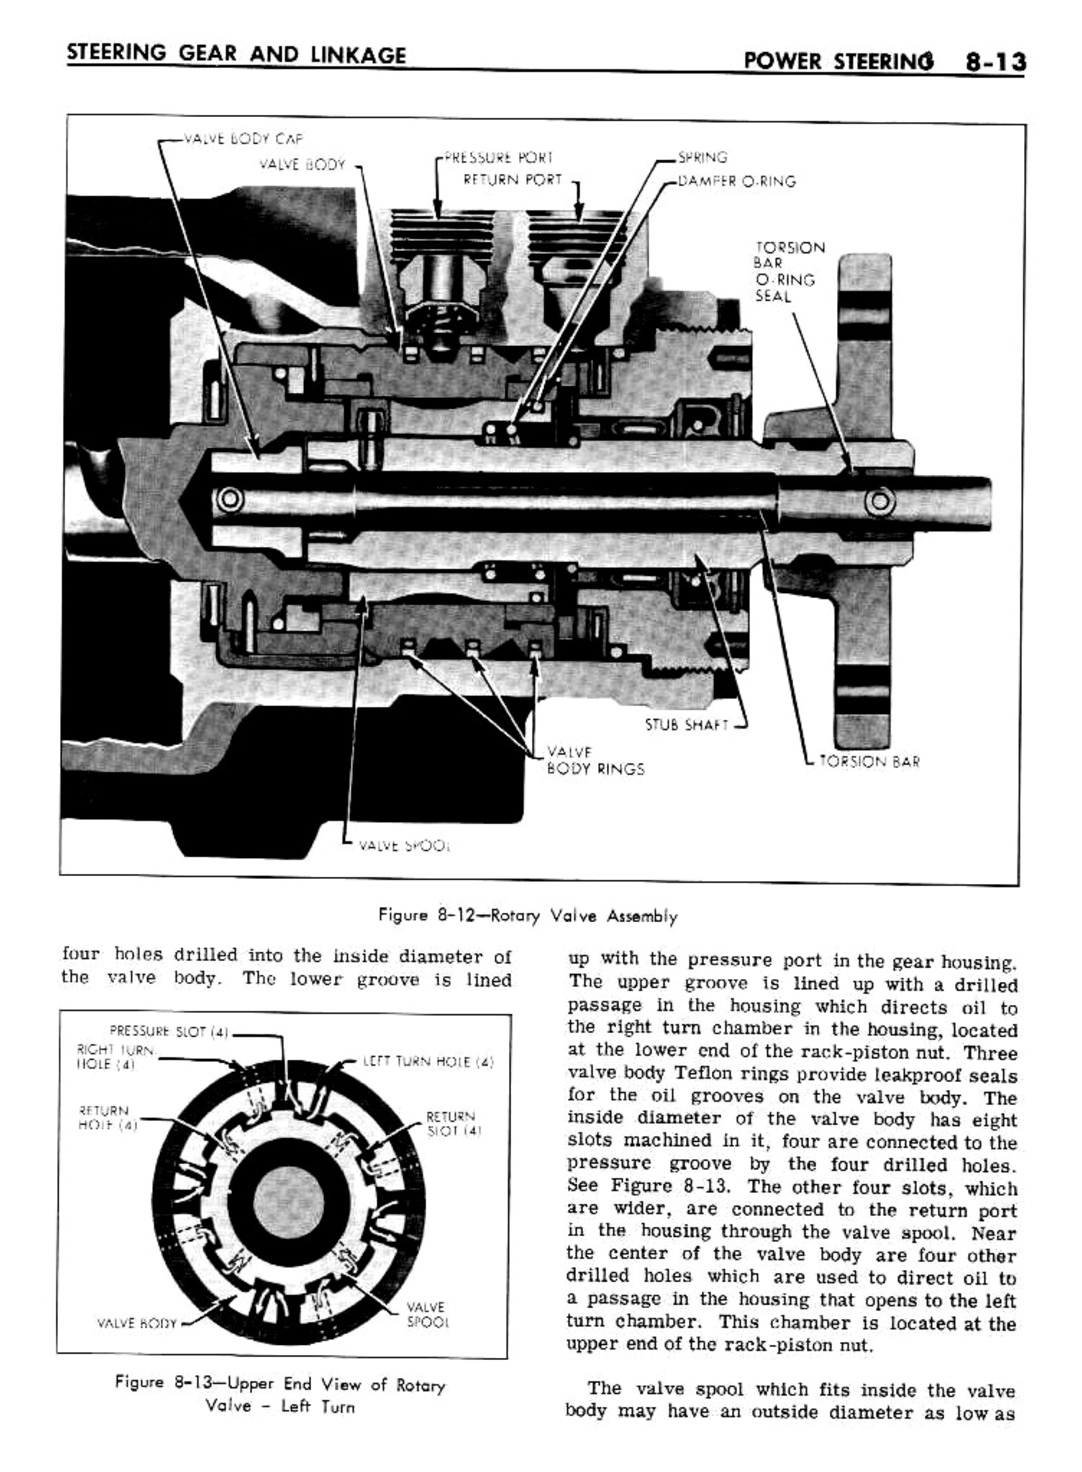 n_08 1961 Buick Shop Manual - Steering-013-013.jpg